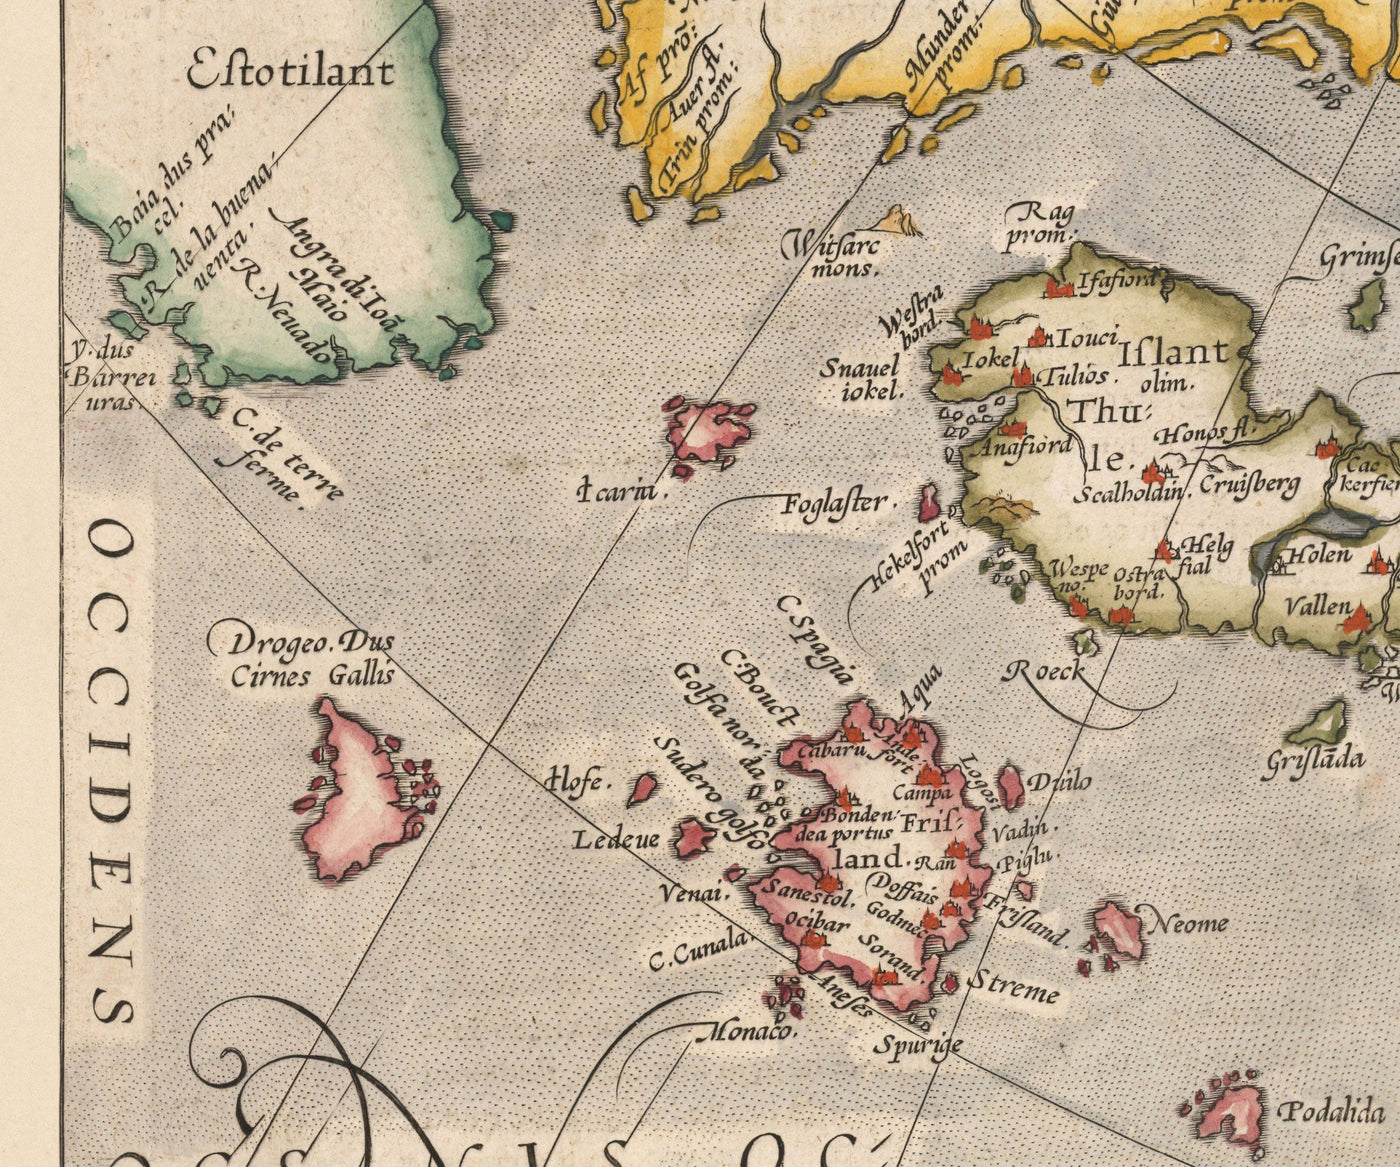 Ancienne Carte de la mer du Nord et de l'Atlantique, 1575 avec mythique Frisland par Abraham Ortelius - Scandinavie, Îles Britanniques, Islande, Groenland